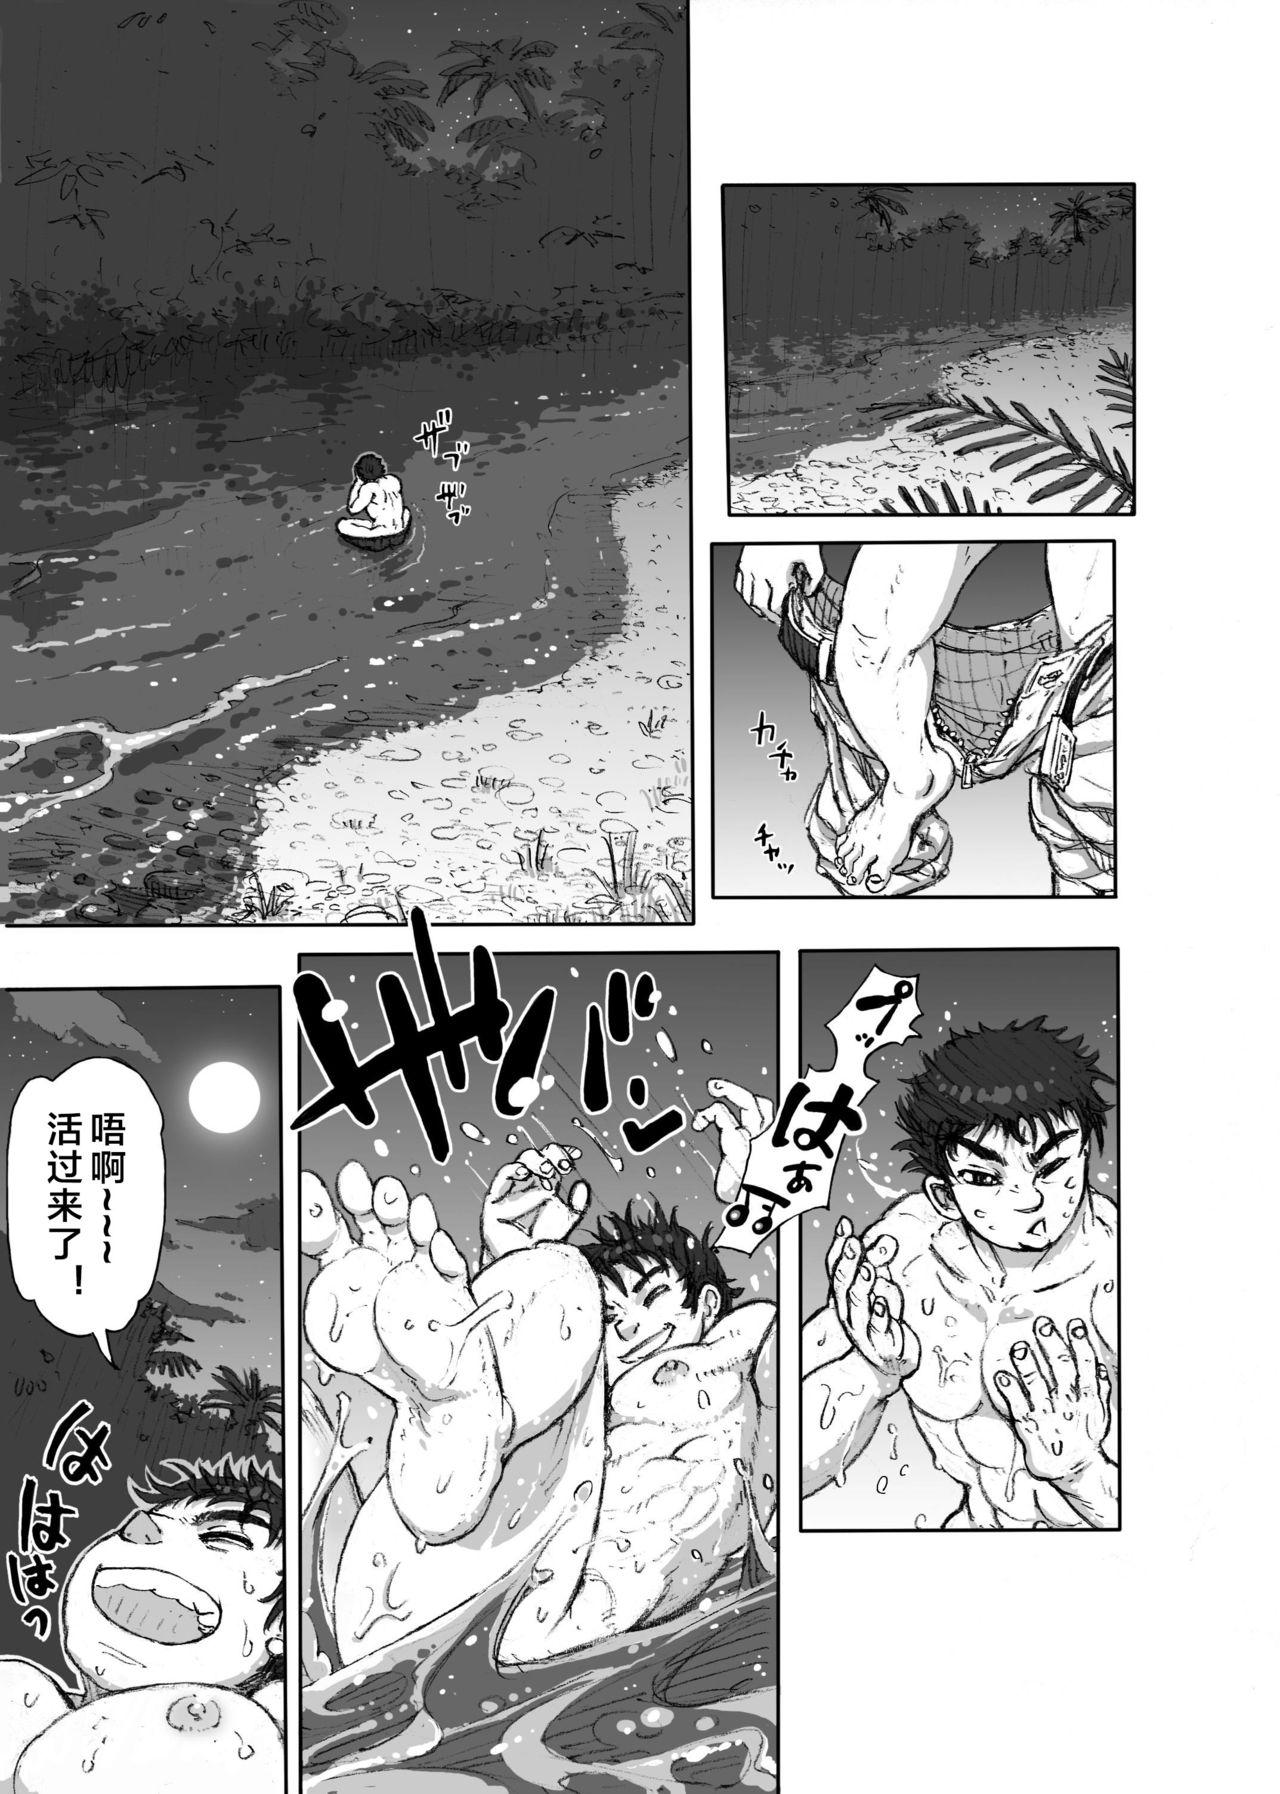 Outside Hepoe no Kuni kara 1 - Mizu no Gakusha Sensei, Hi no Buzoku no Saru ni Hazukashimerareru no Maki Milfporn - Page 5